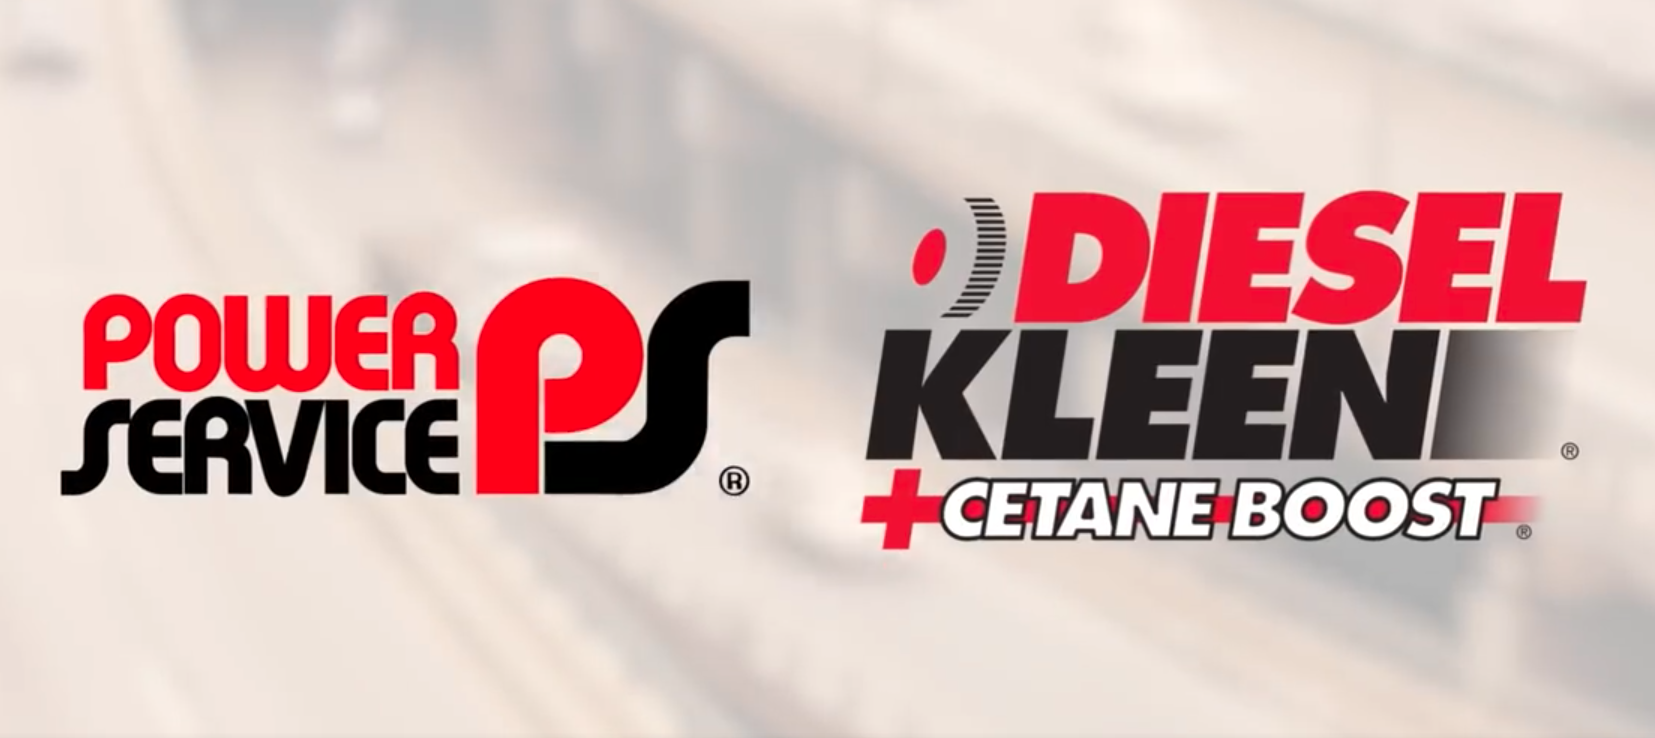 Diesel Kleen Cetane Boost - Power Service